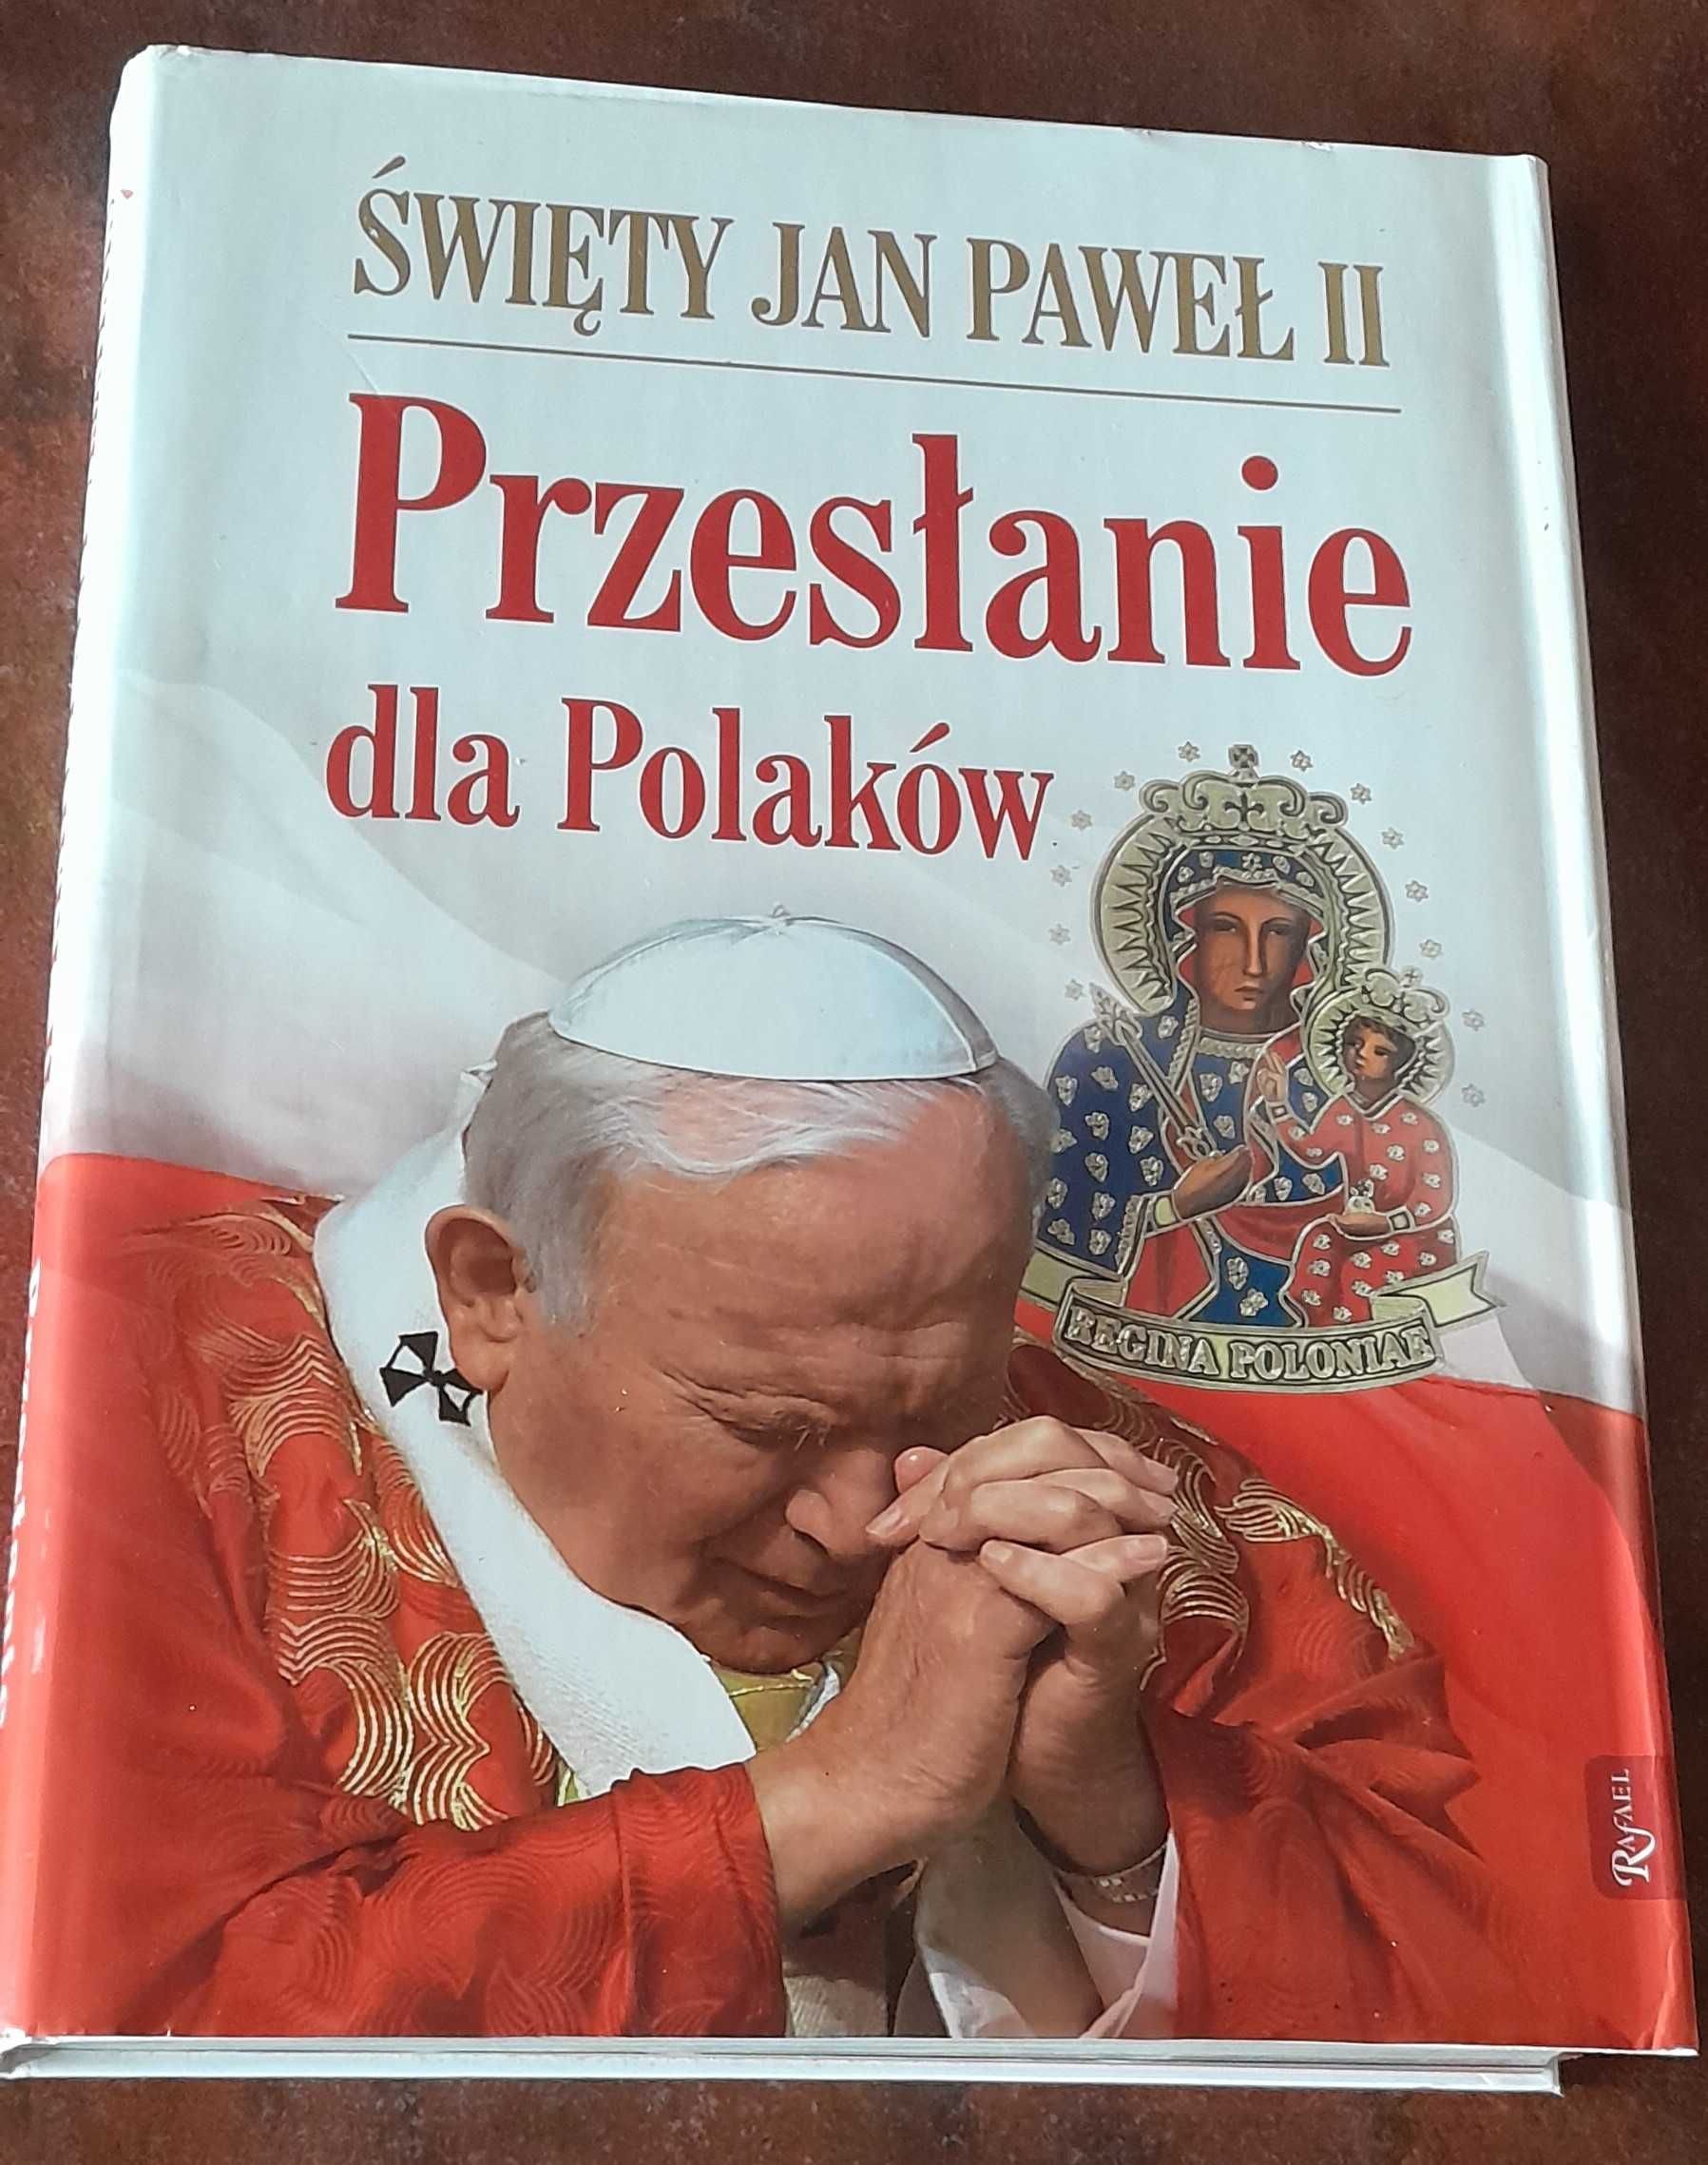 Święty Jan Paweł II, Przesłanie dla Polaków,książka,album